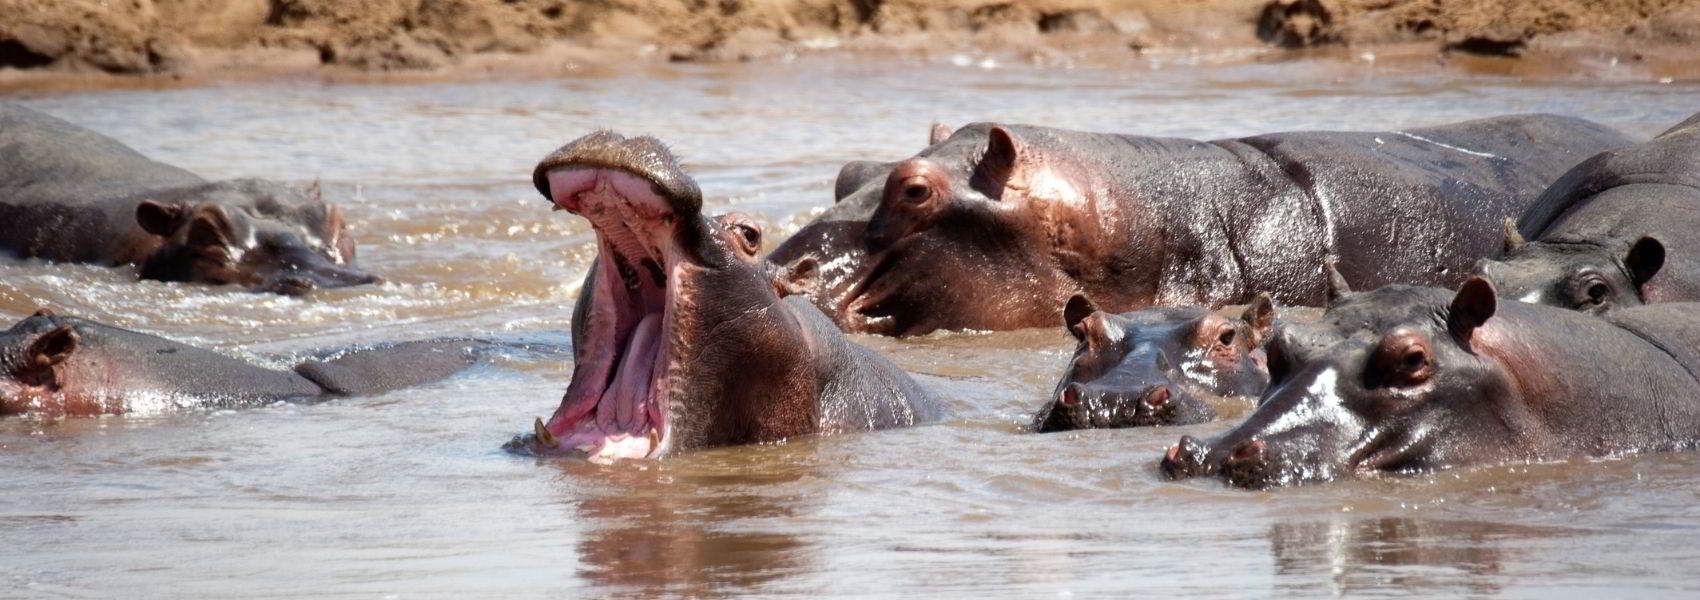 Cosa vedere in tanzania foto ipopotami